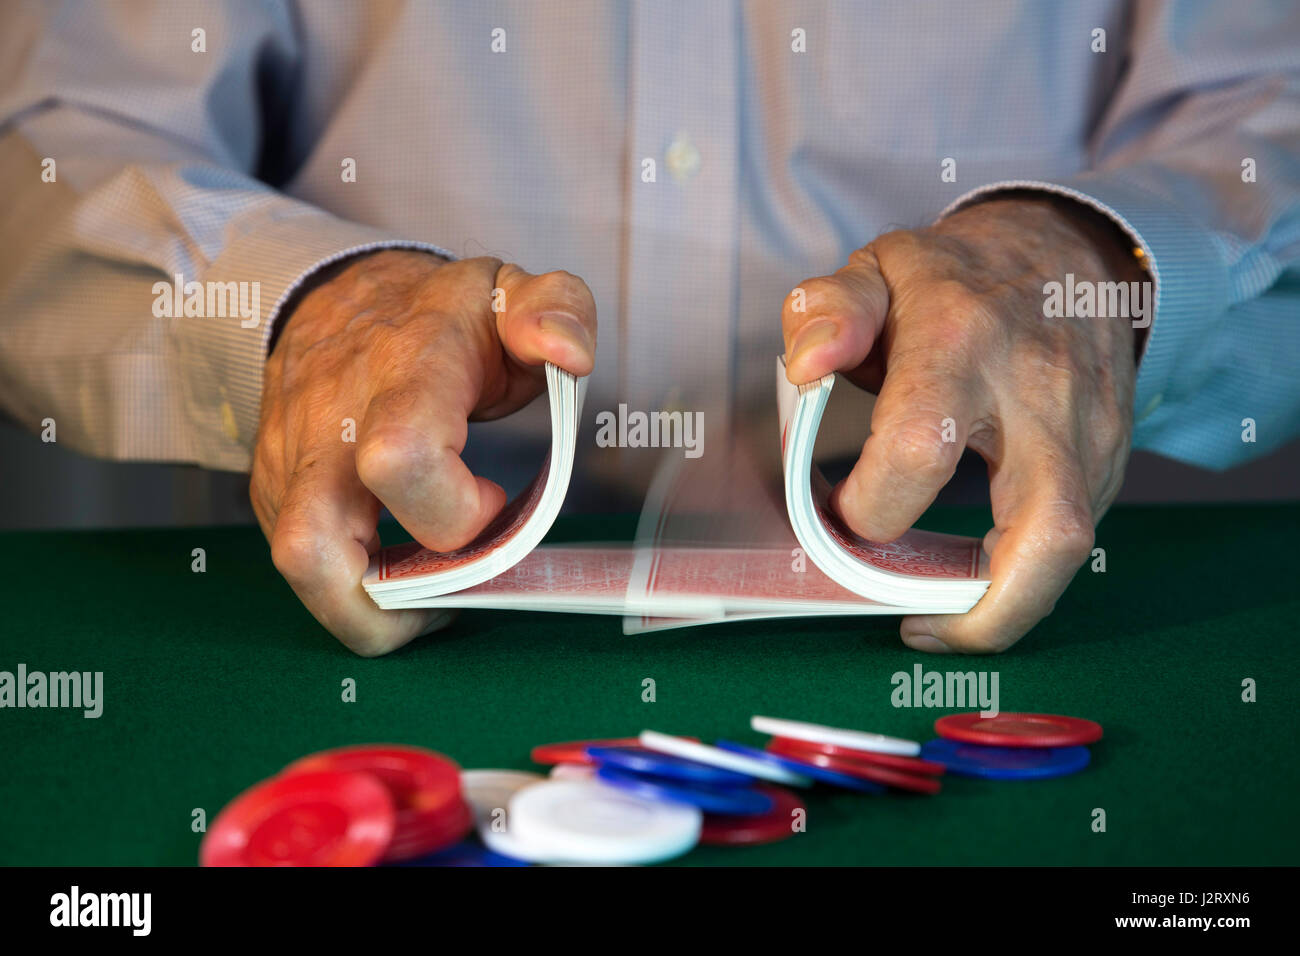 man Shuffling Cards Dealing at Poker Game Stock Photo